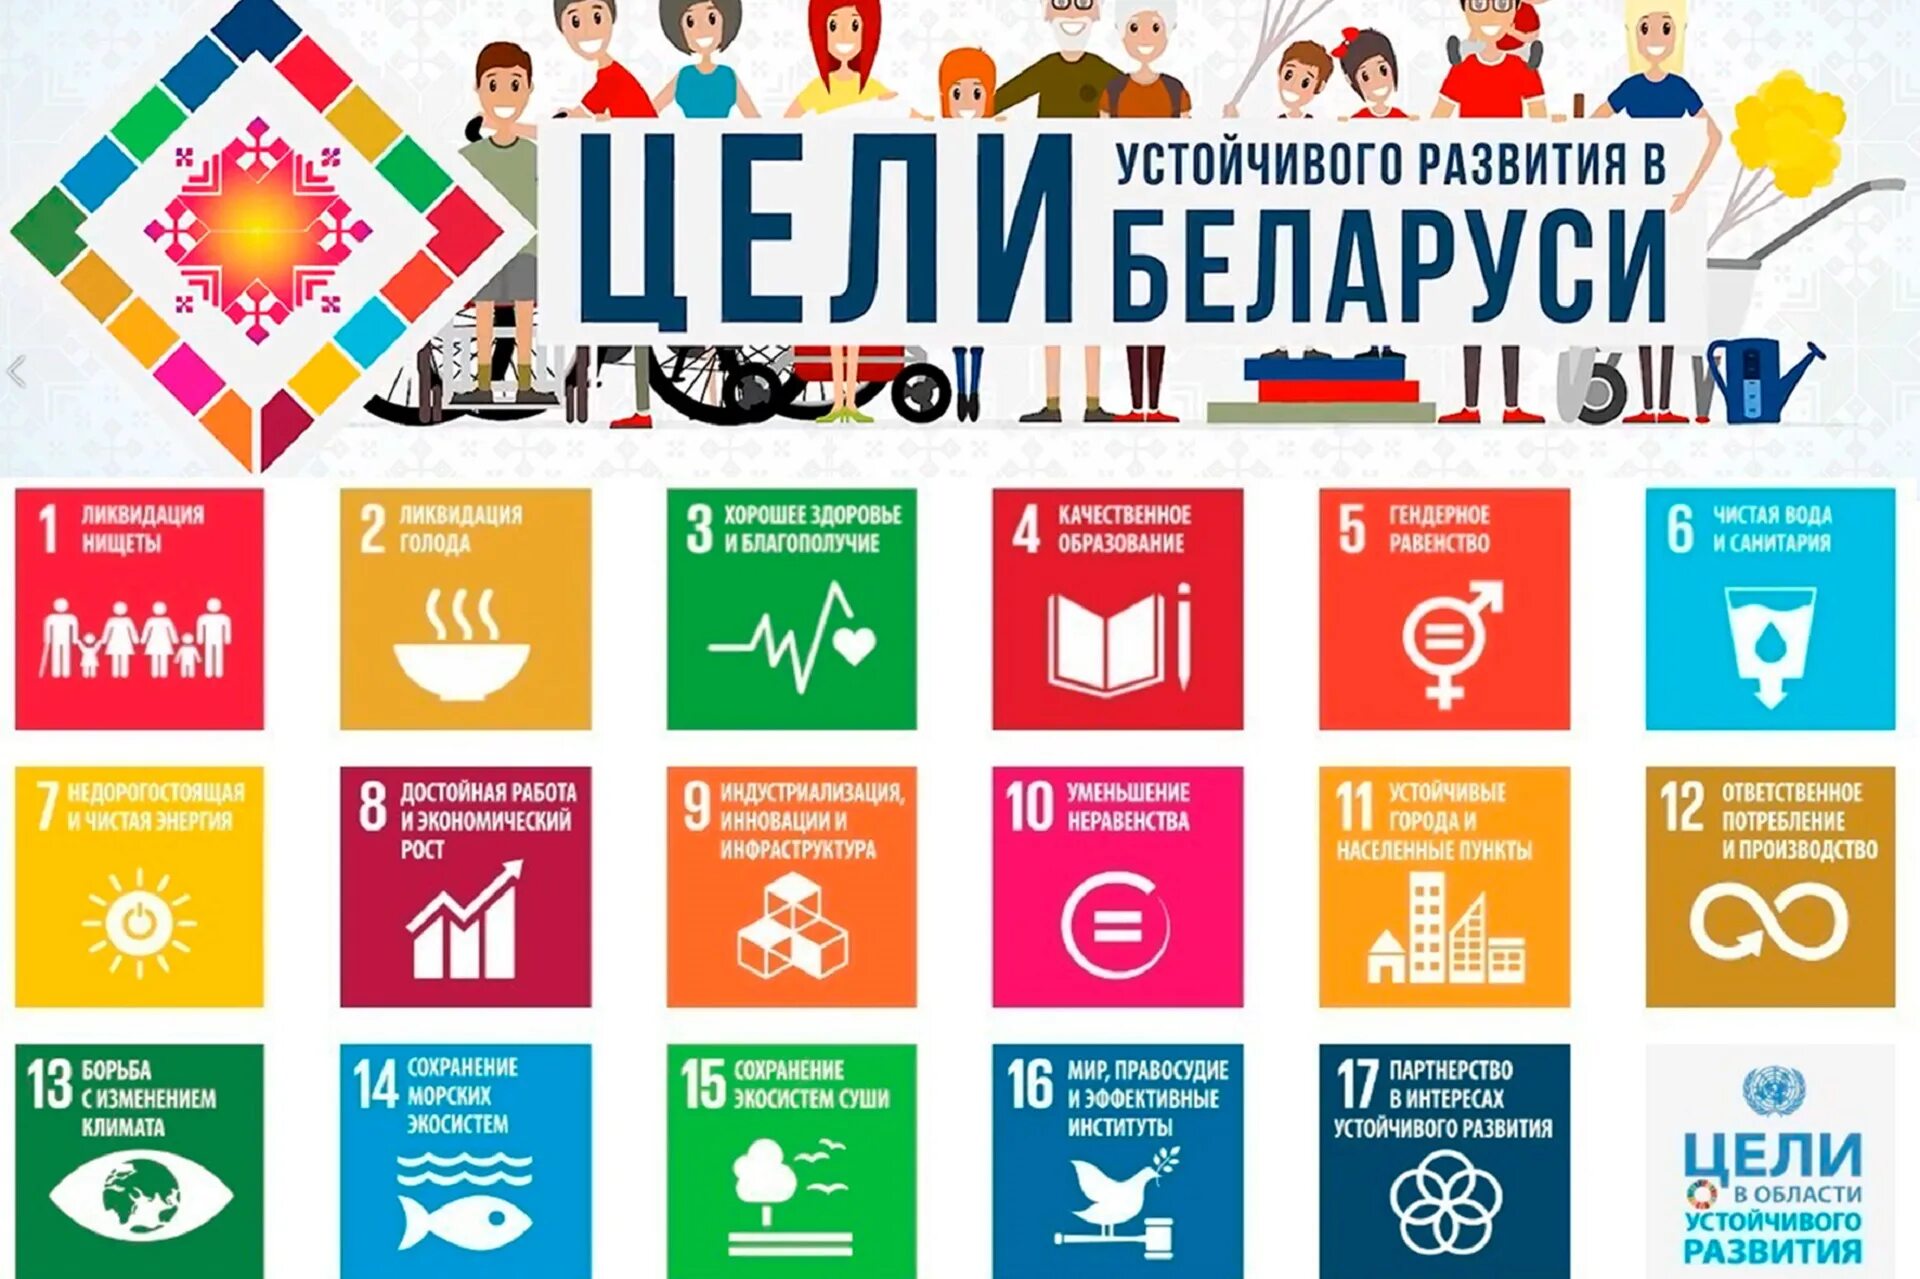 17 Целей устойчивого развития ООН. Цели устойчивого развития ООН 2015-2030. Цели устойчивого развития на период до 2030 года Беларусь. Цели устойчивого развития ООН до 2030.